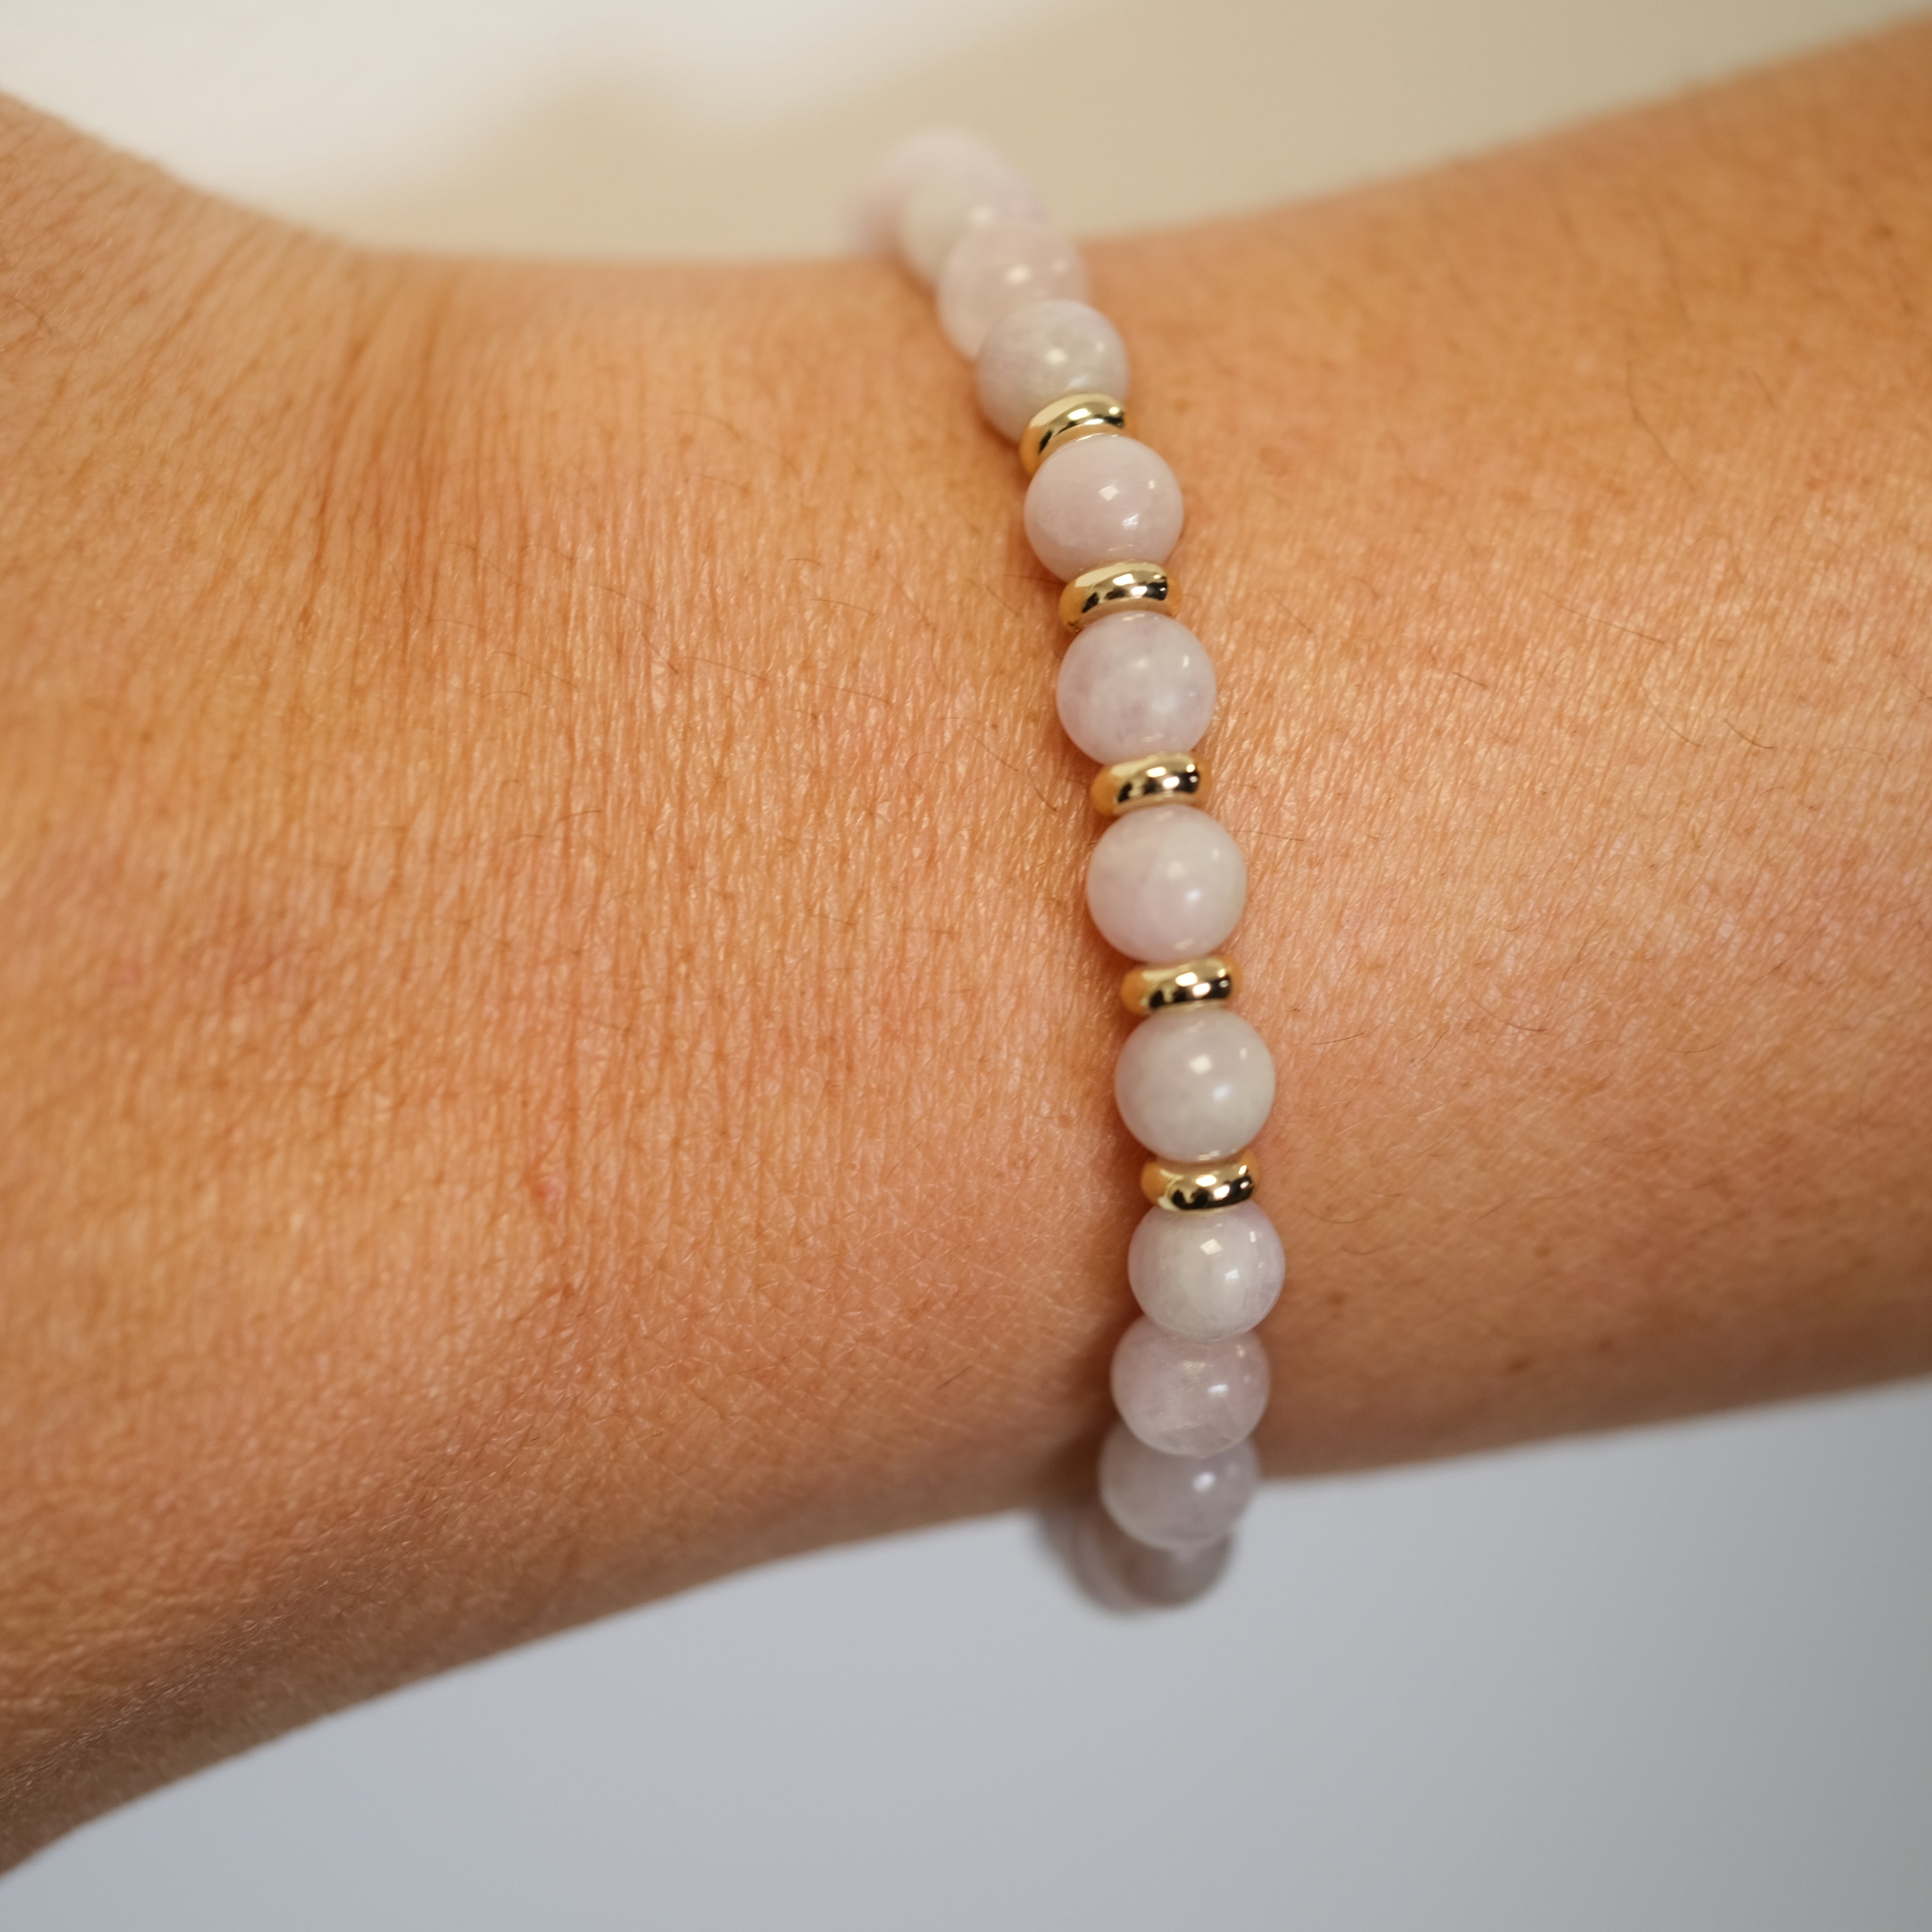 A 6mm Kunzite bracelet in 6mm beads worn on a model's wrist